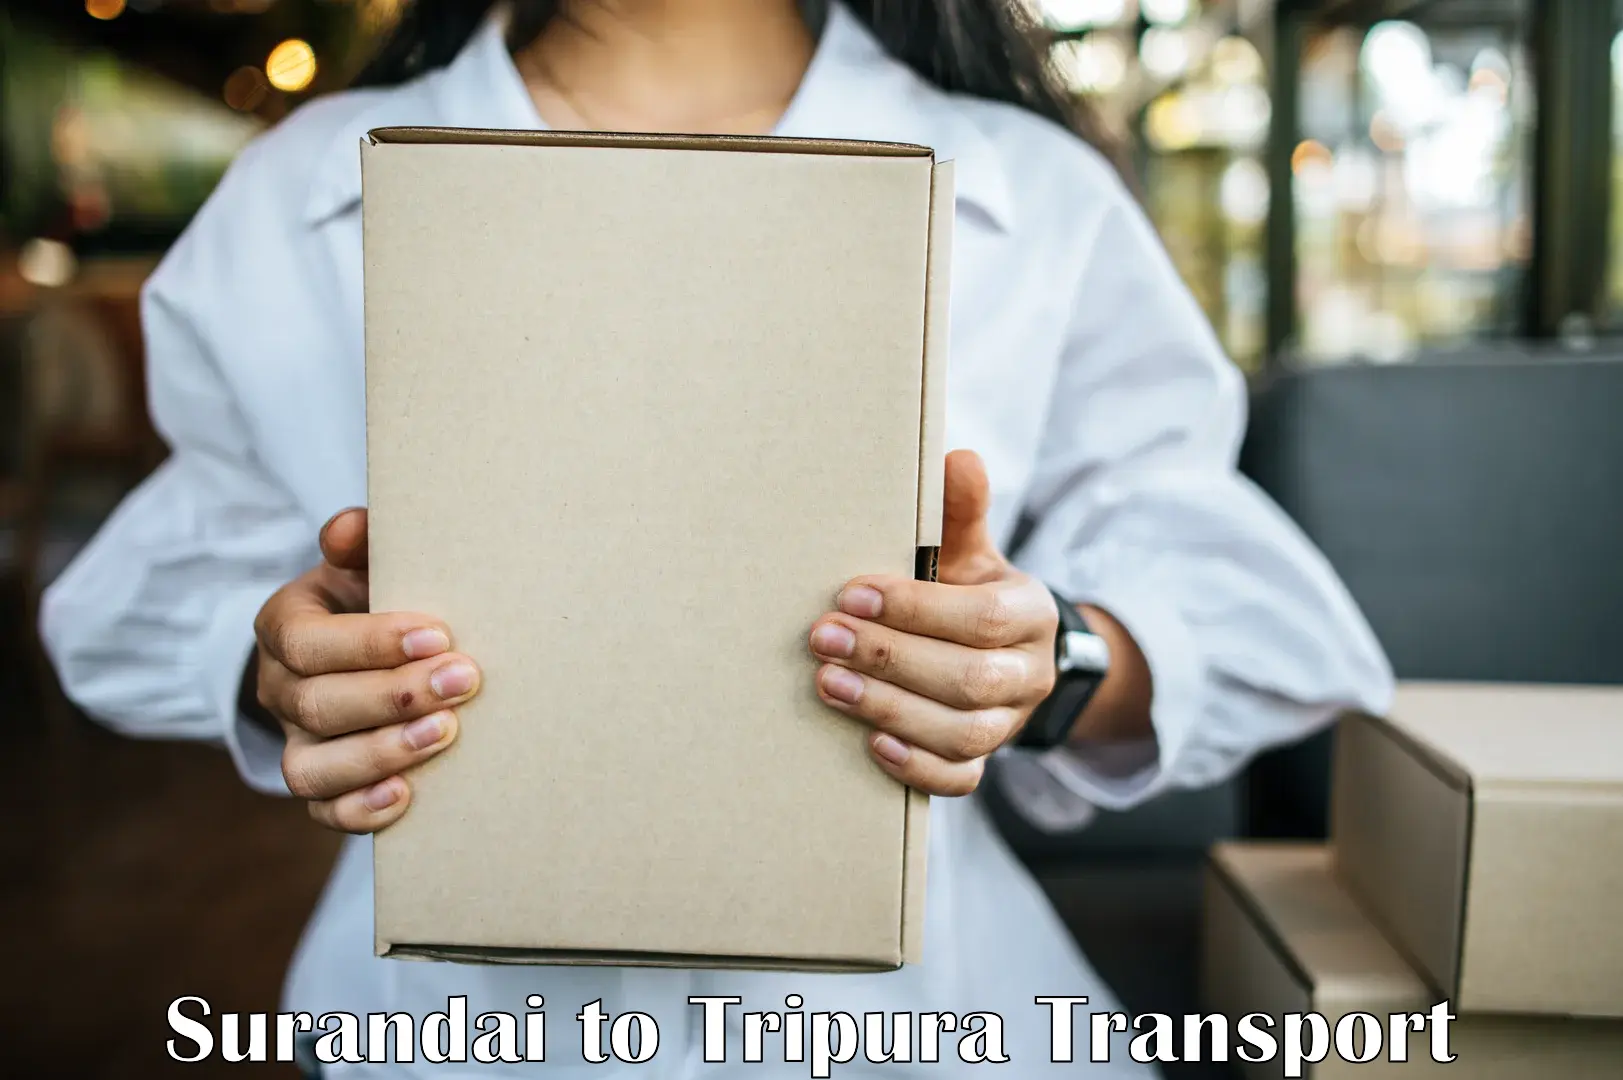 Container transport service Surandai to Teliamura